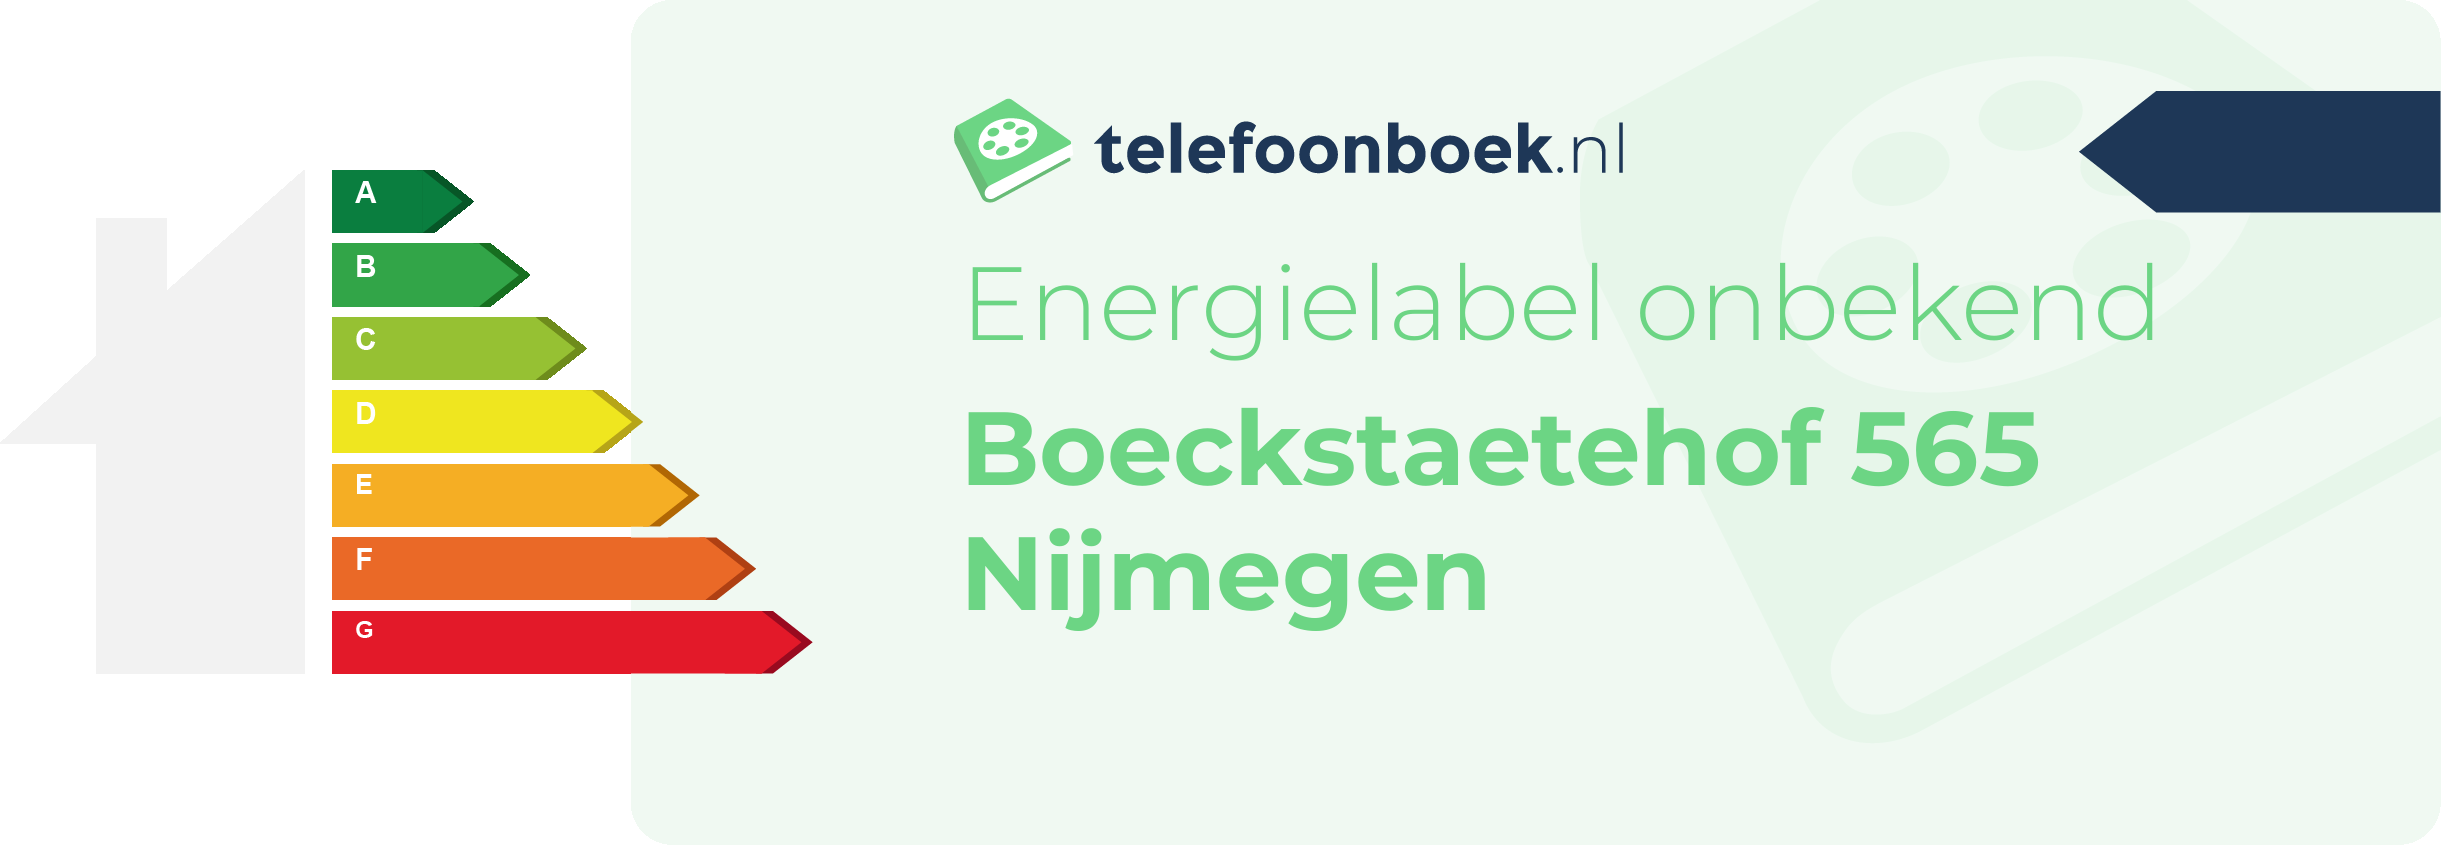 Energielabel Boeckstaetehof 565 Nijmegen